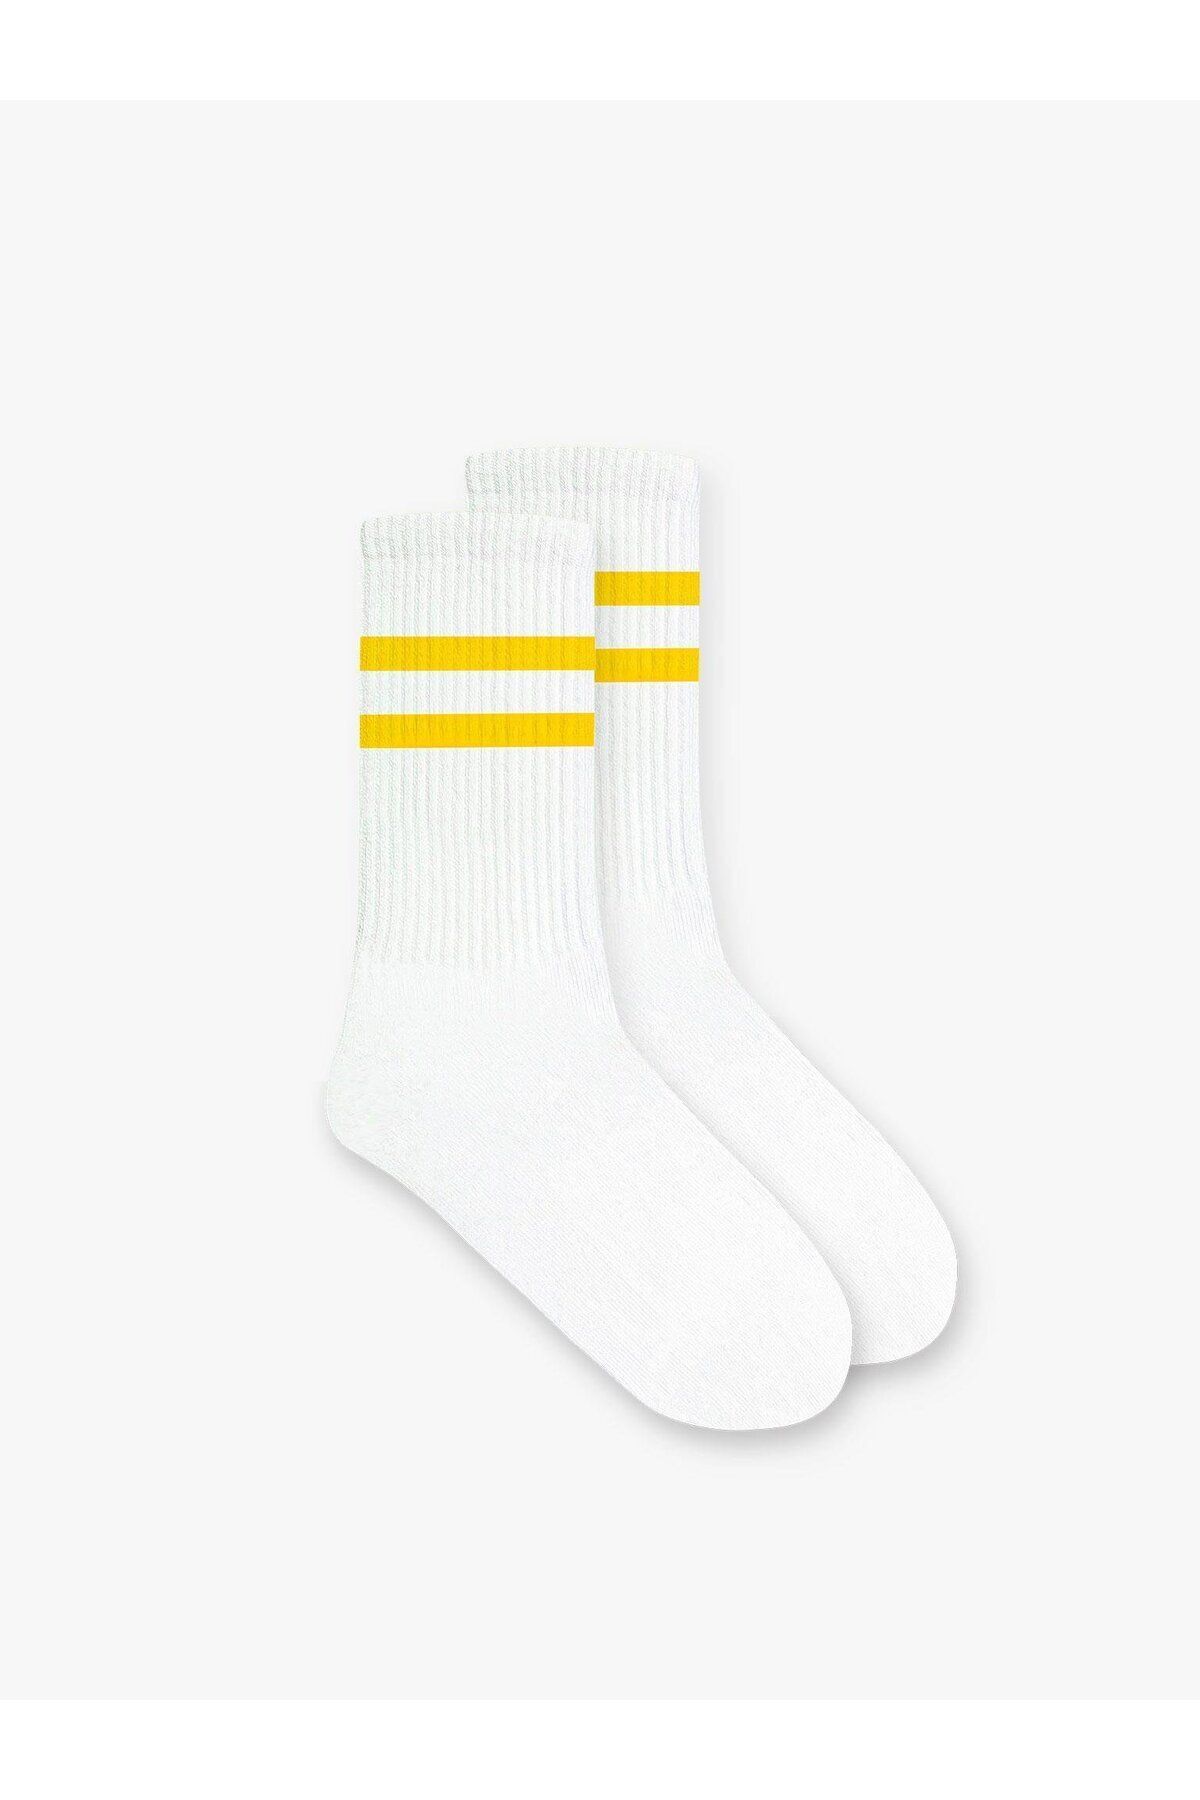 ablukaonline Unisex Çizgili Desenli Uzun Kolej Tenis Çorap Sarı CRP.0011